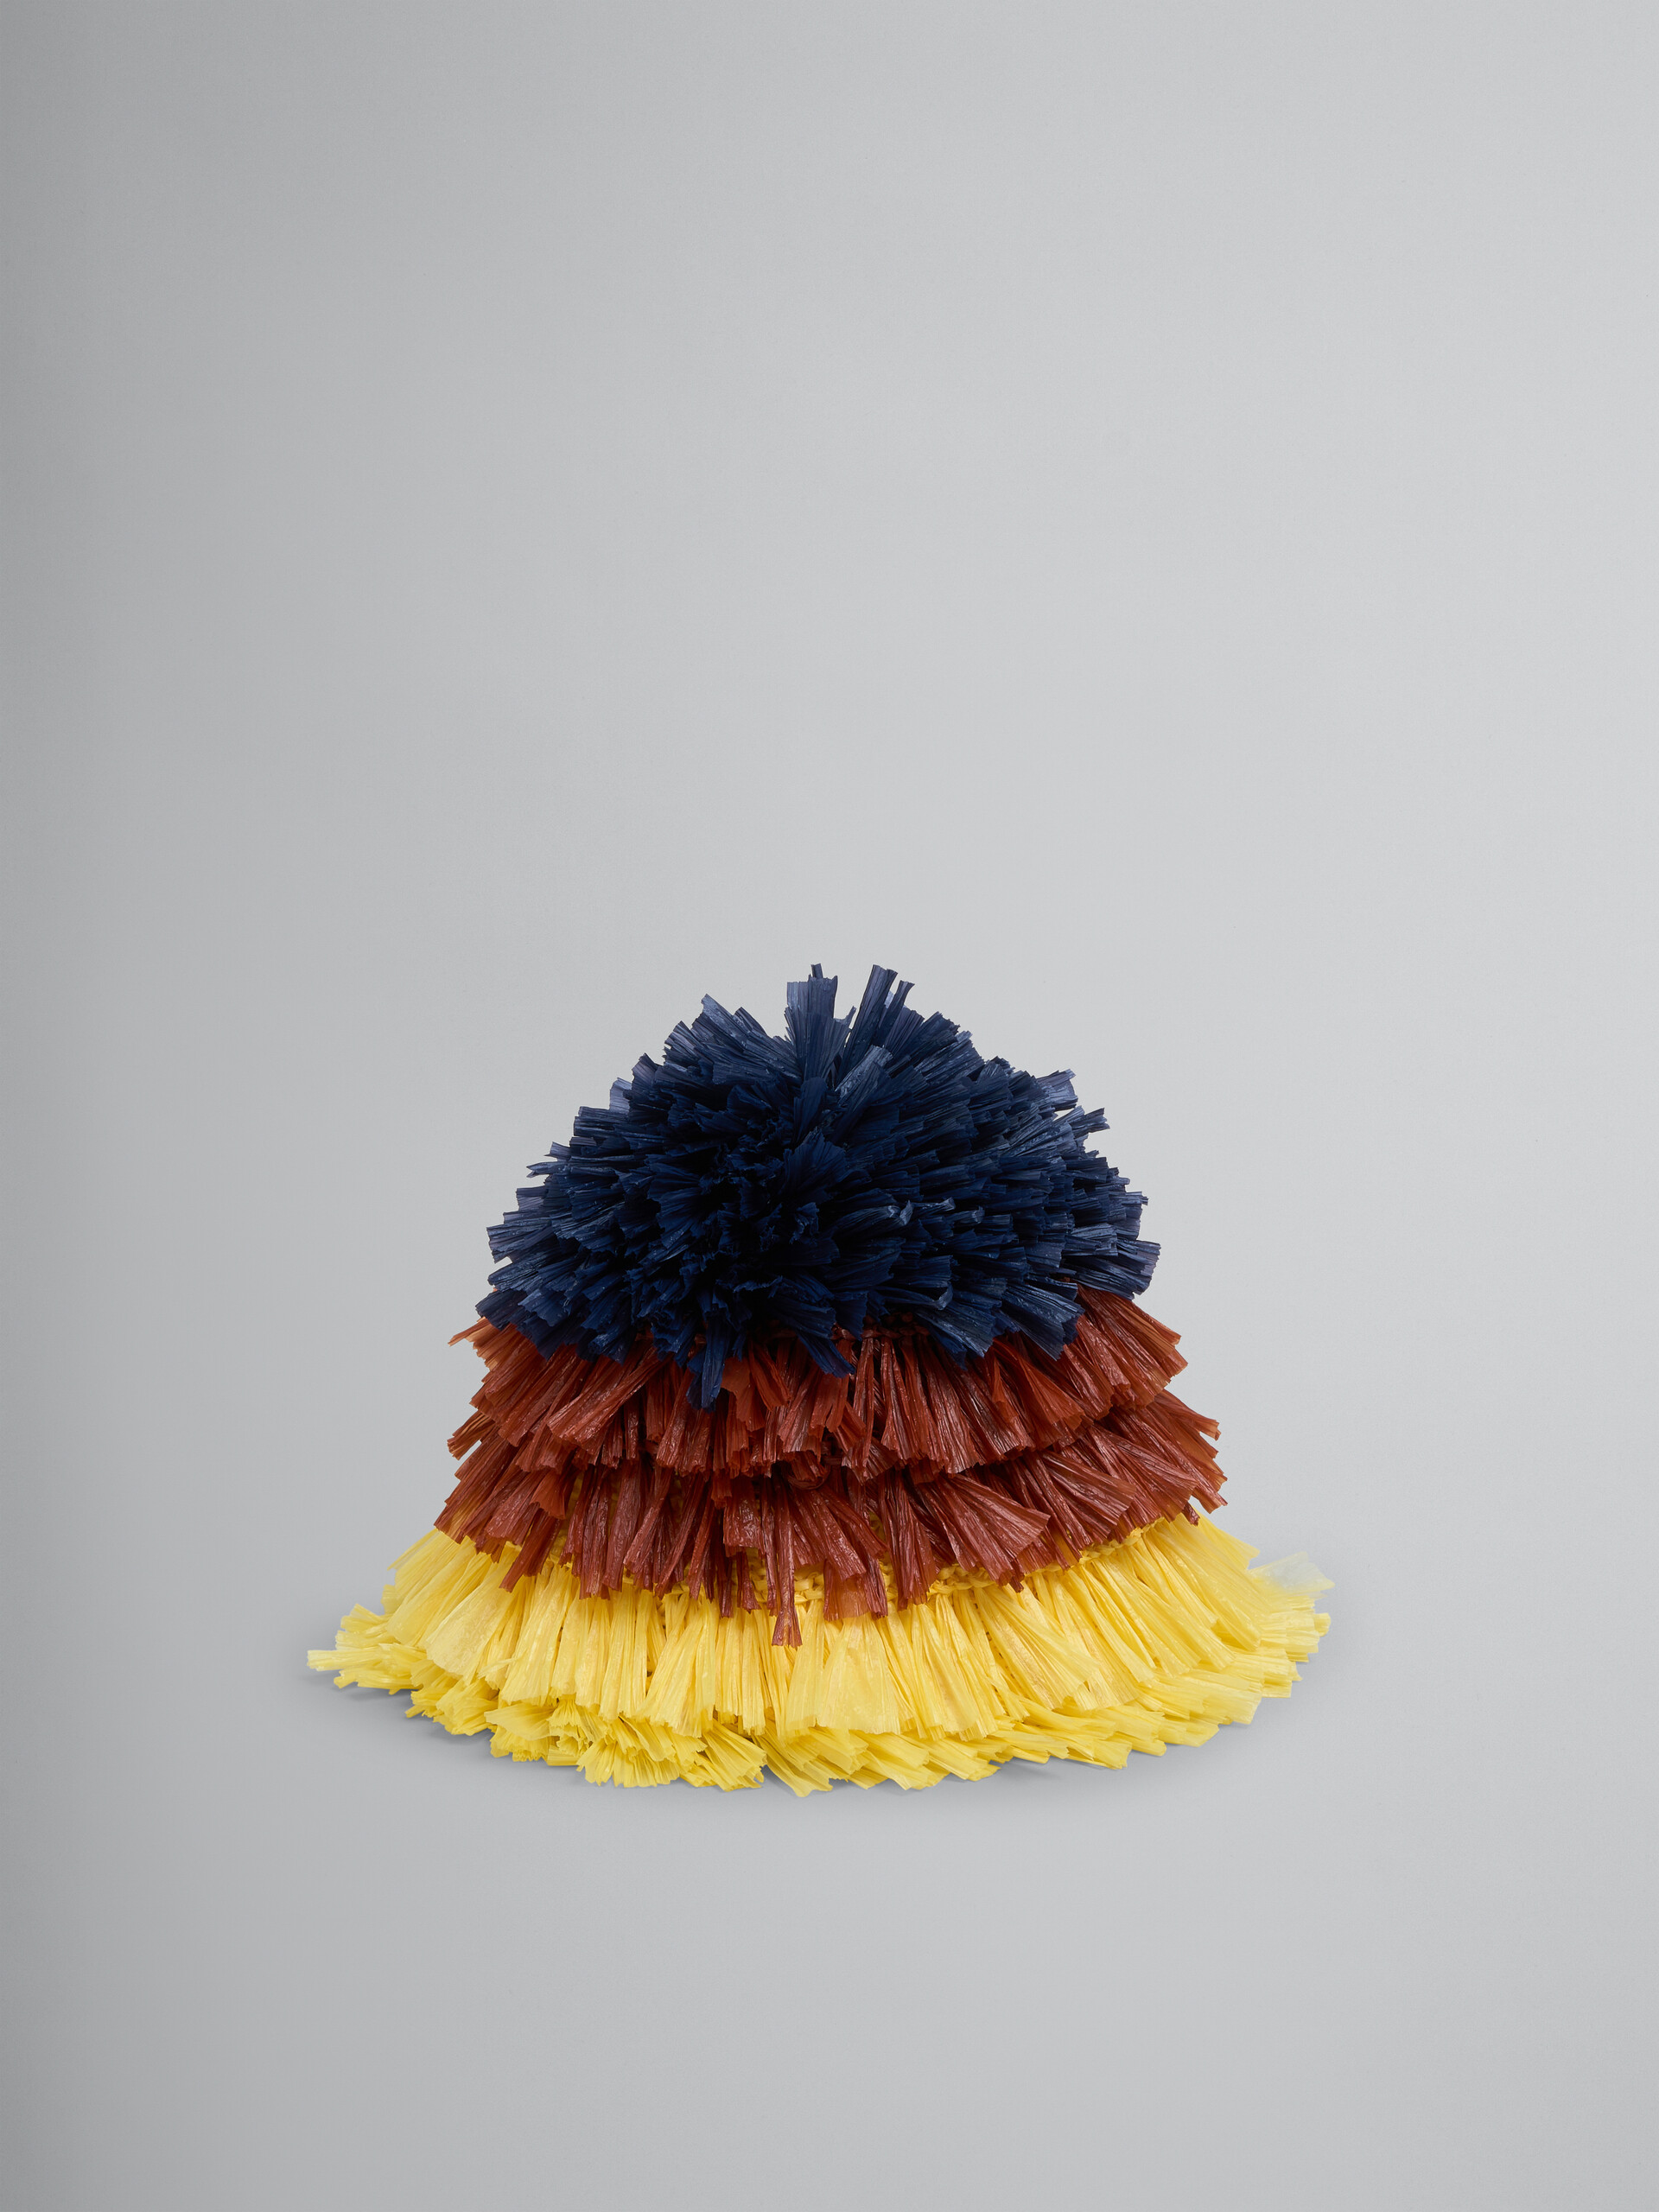 Sombrero cubo de tejido efecto rafia azul, marrón y amarillo - Sombrero - Image 1